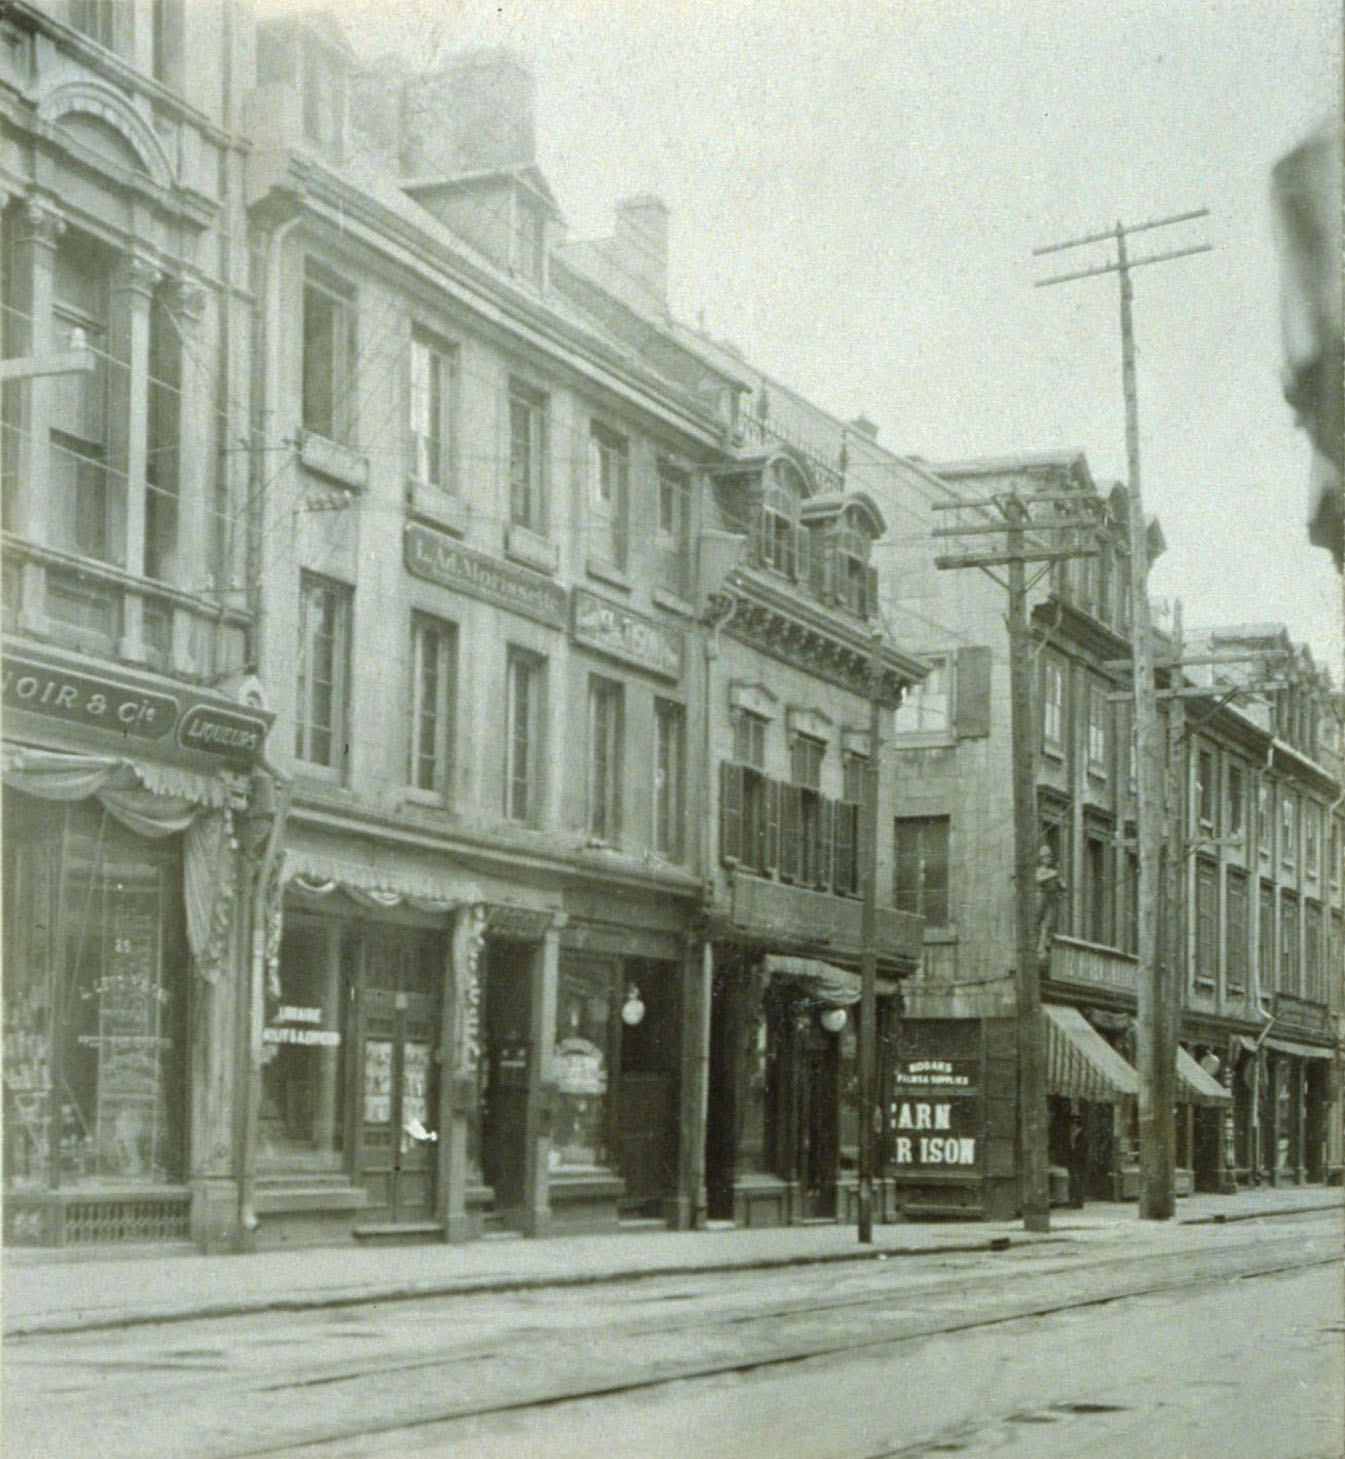 Photographie du 26-28, rue Notre-Dame Est prise vers 1910